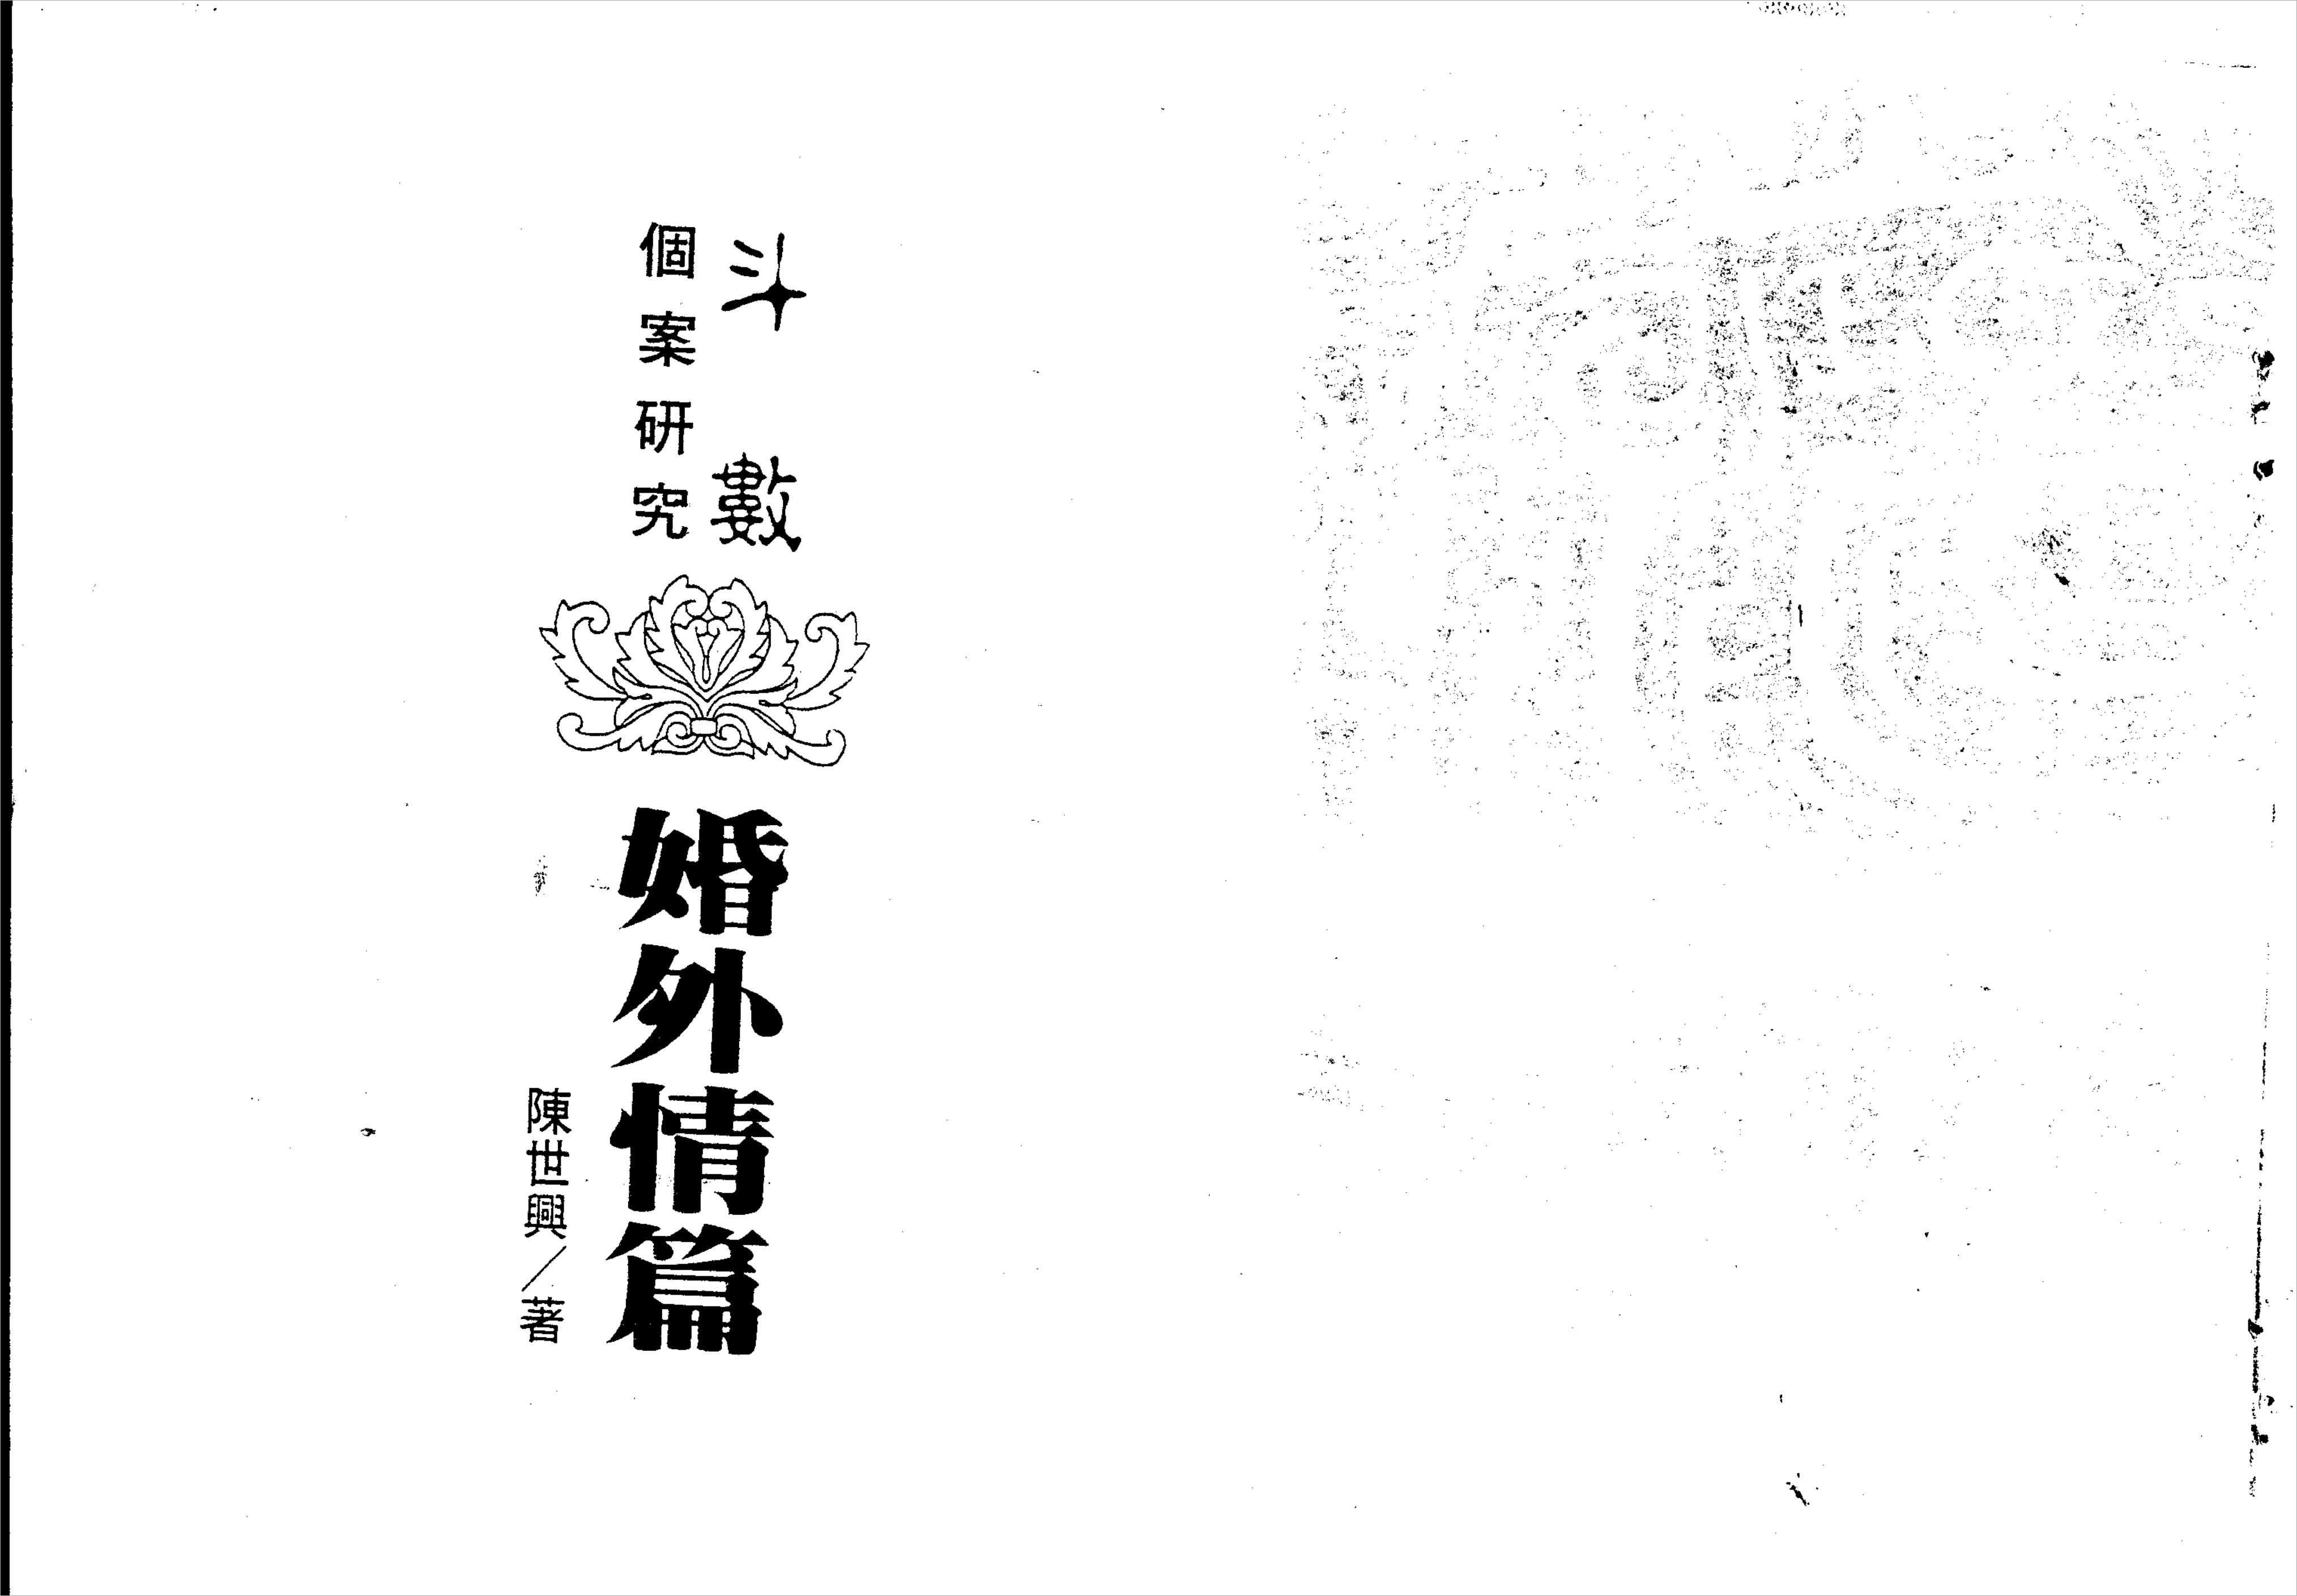 Chen Shixing-Introduction to Zi Wei Dou Shu-extra-marital affairs (135 pages).pdf